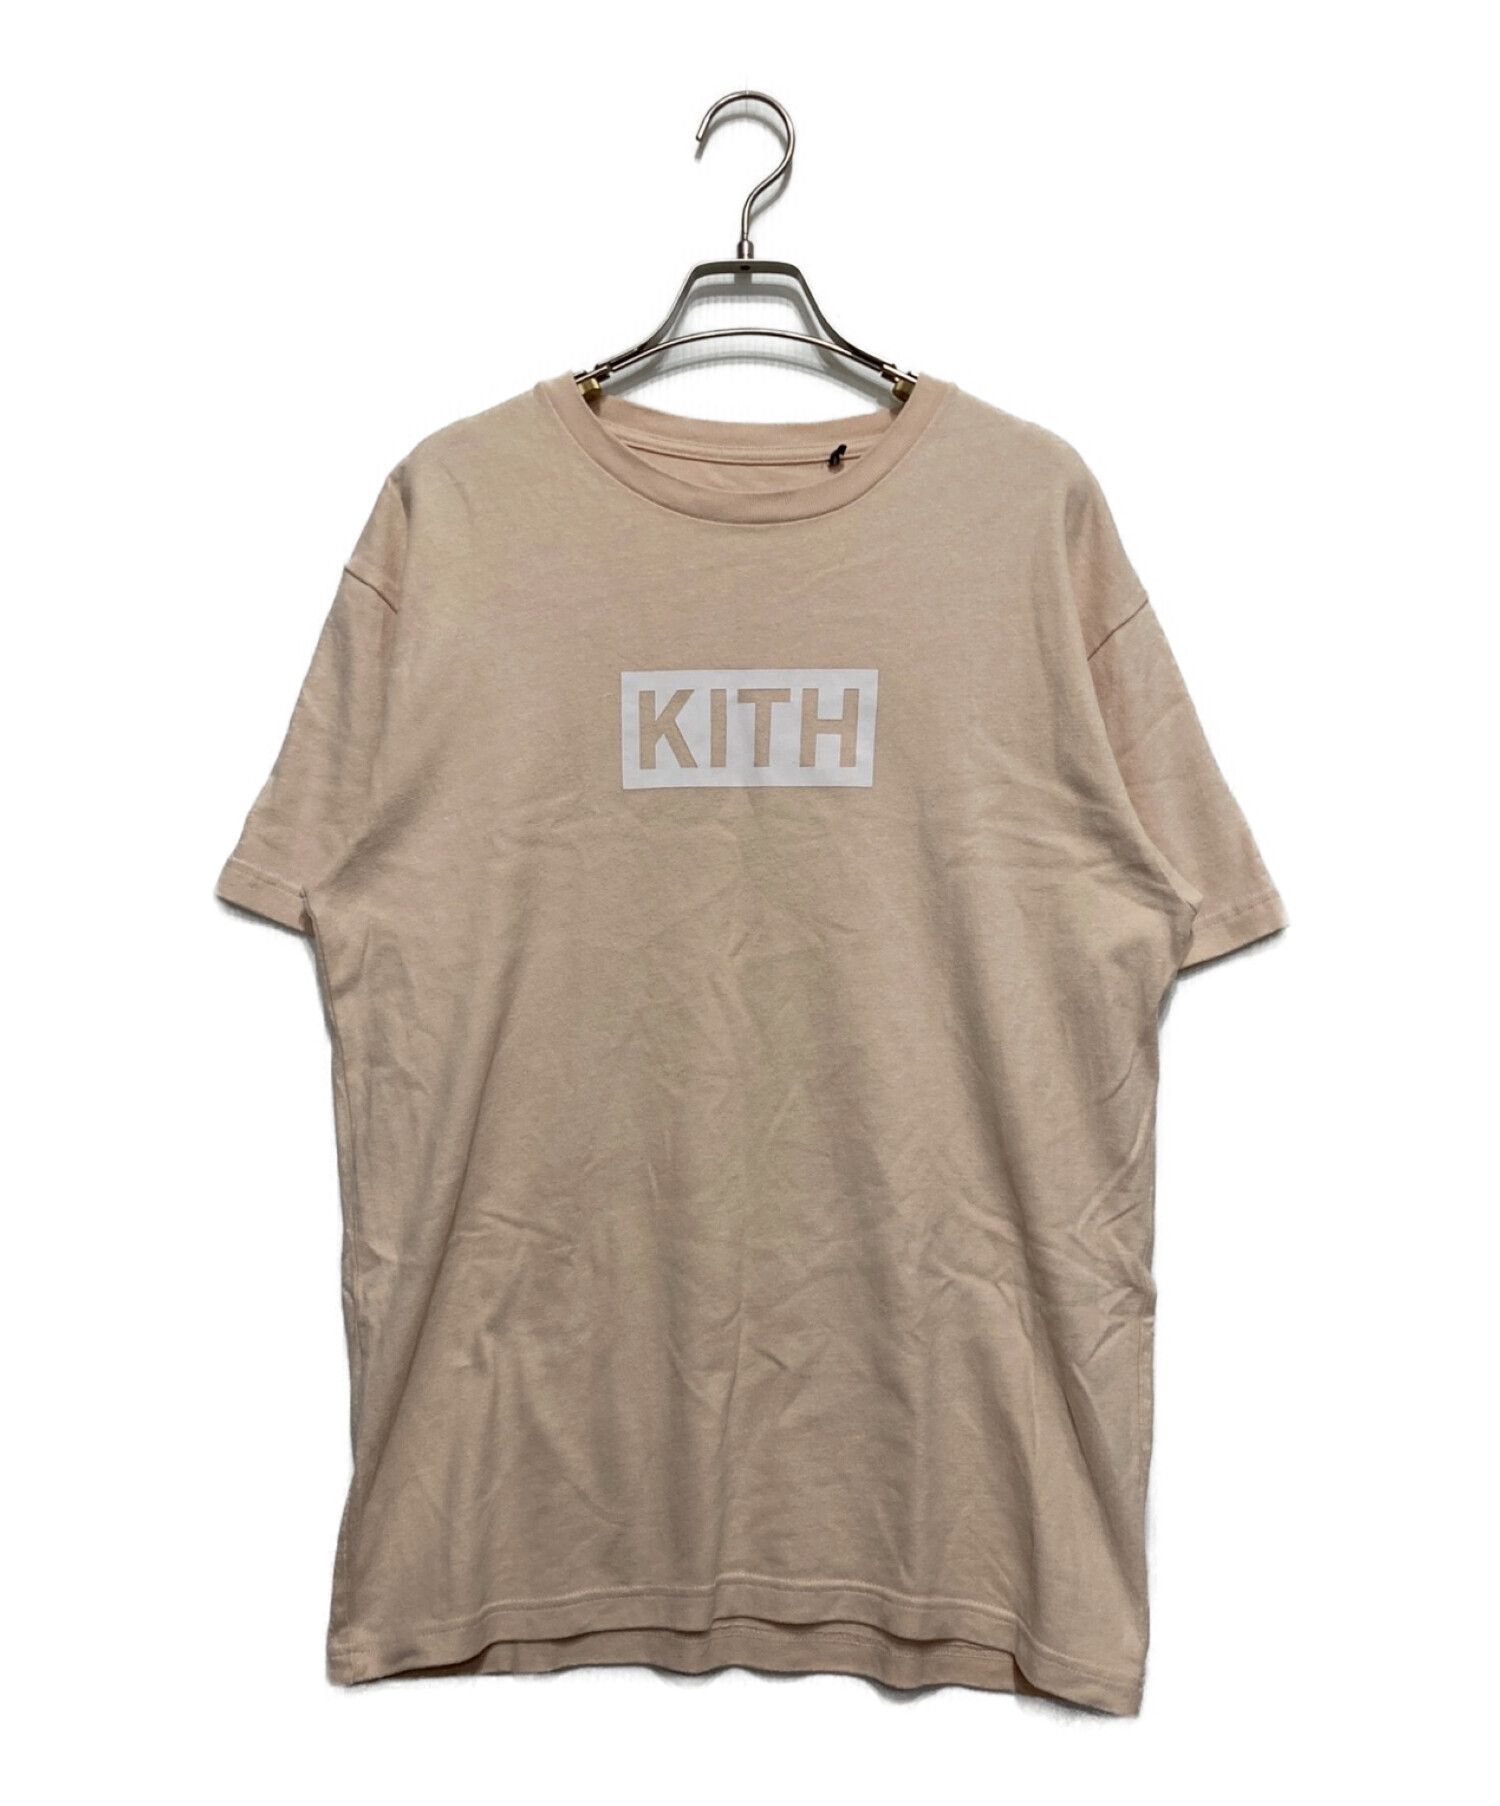 KITH (キス) Tシャツ ピンク サイズ:S